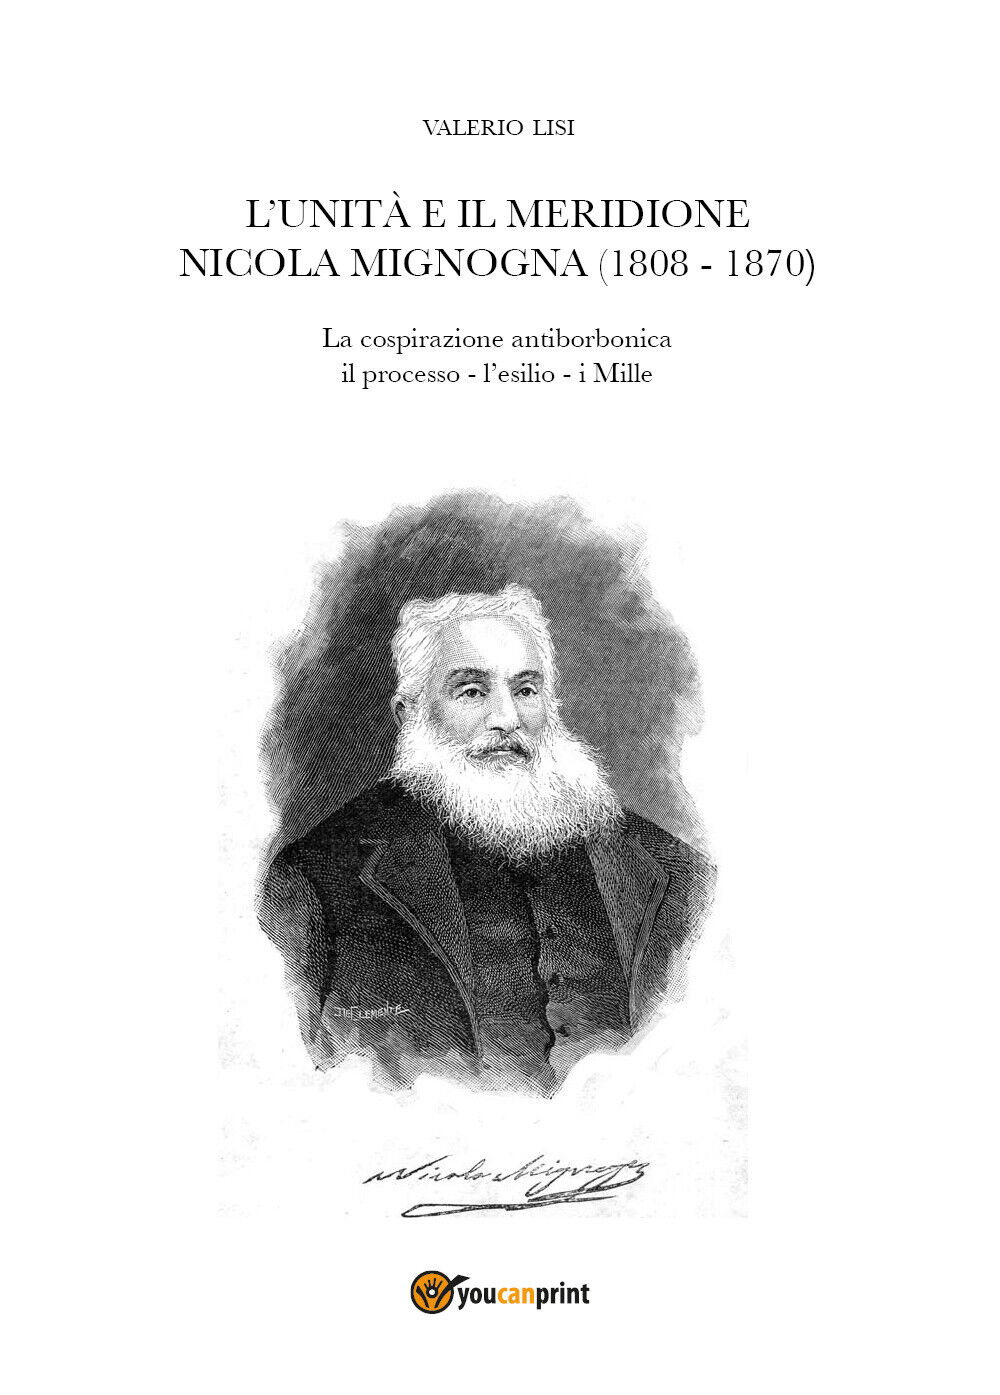 L'Unit? e il Meridione. Nicola Mignogna (1808-1870) di Valerio Lisi,  2020,  You